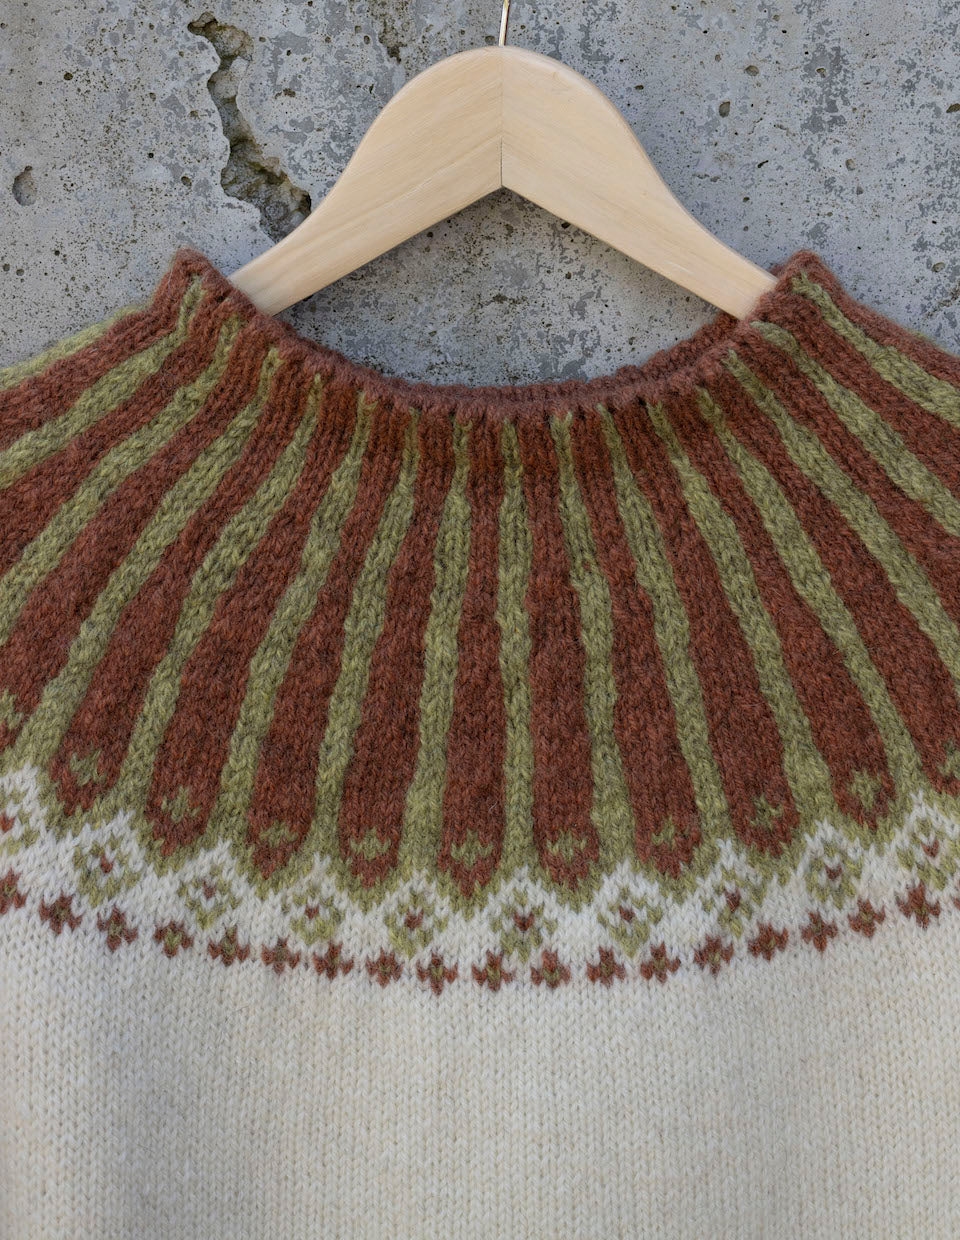 Turid, 3 ply white sweater knitting kit